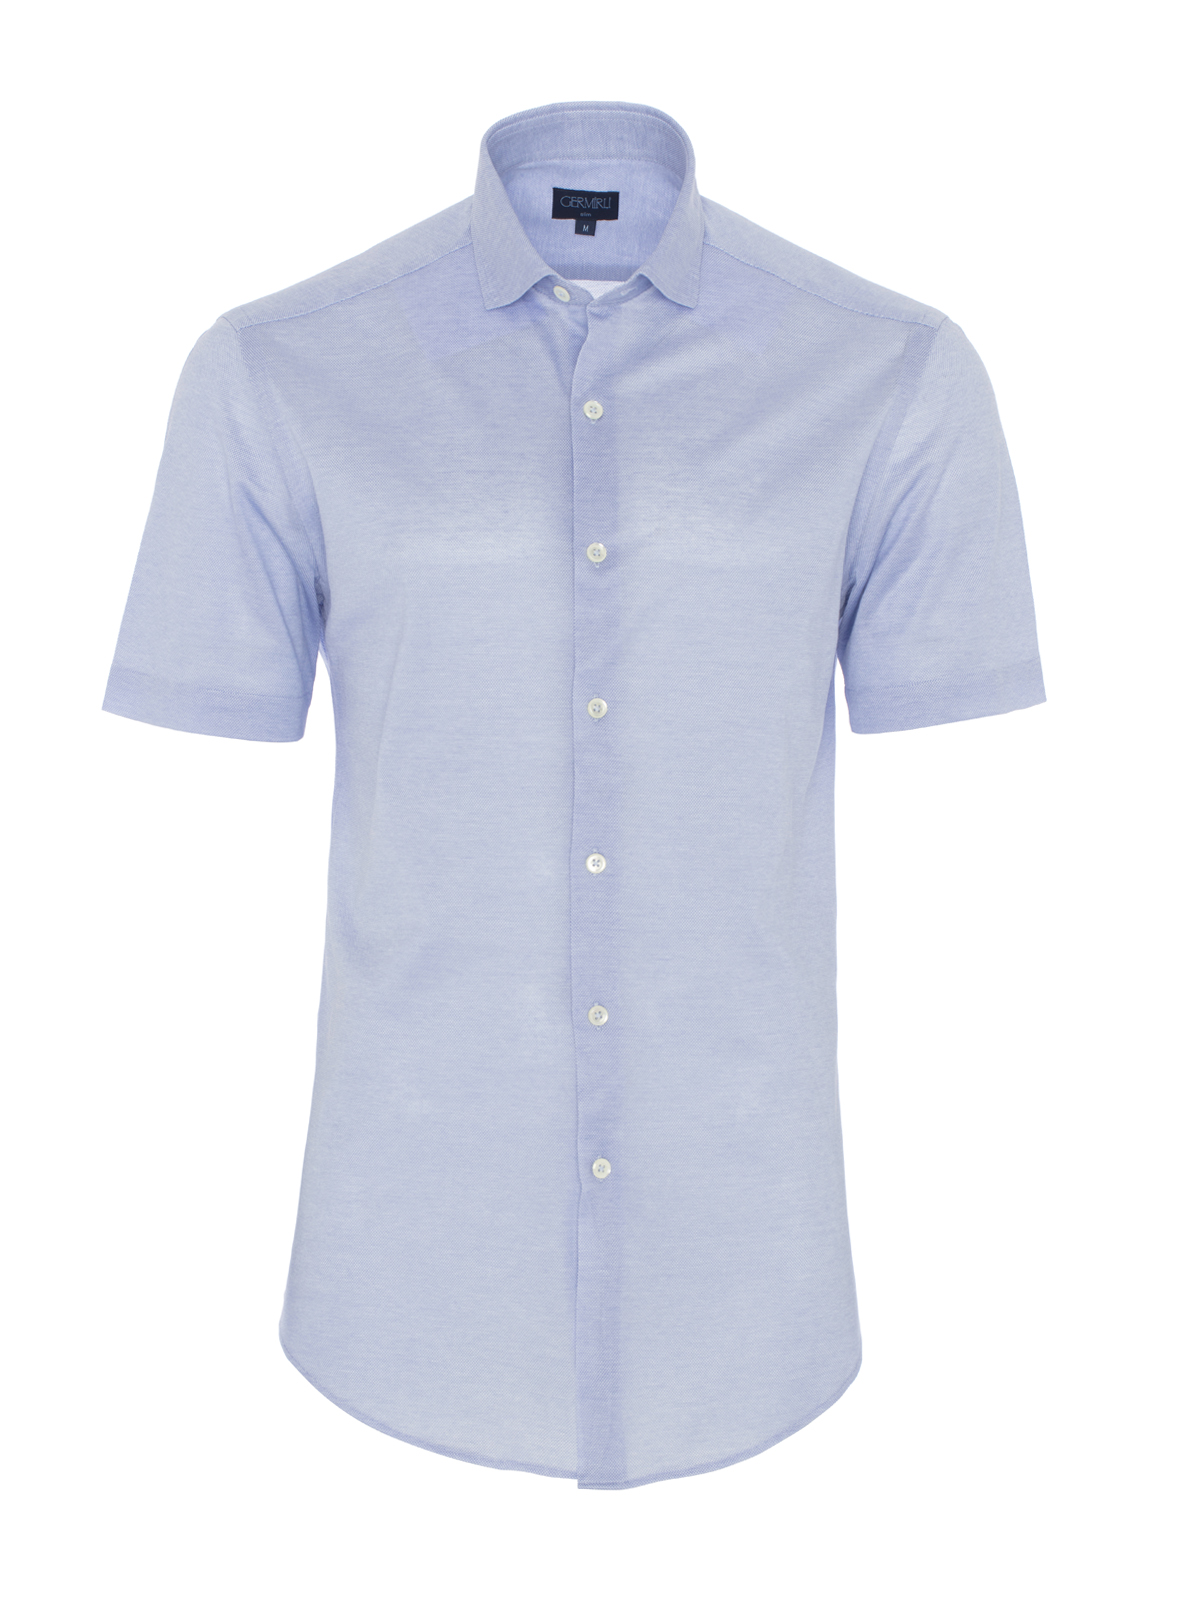 Germirli - Germirli Açık Mavi Klasik Yaka Örme Kısa Kollu Slim Fit Gömlek